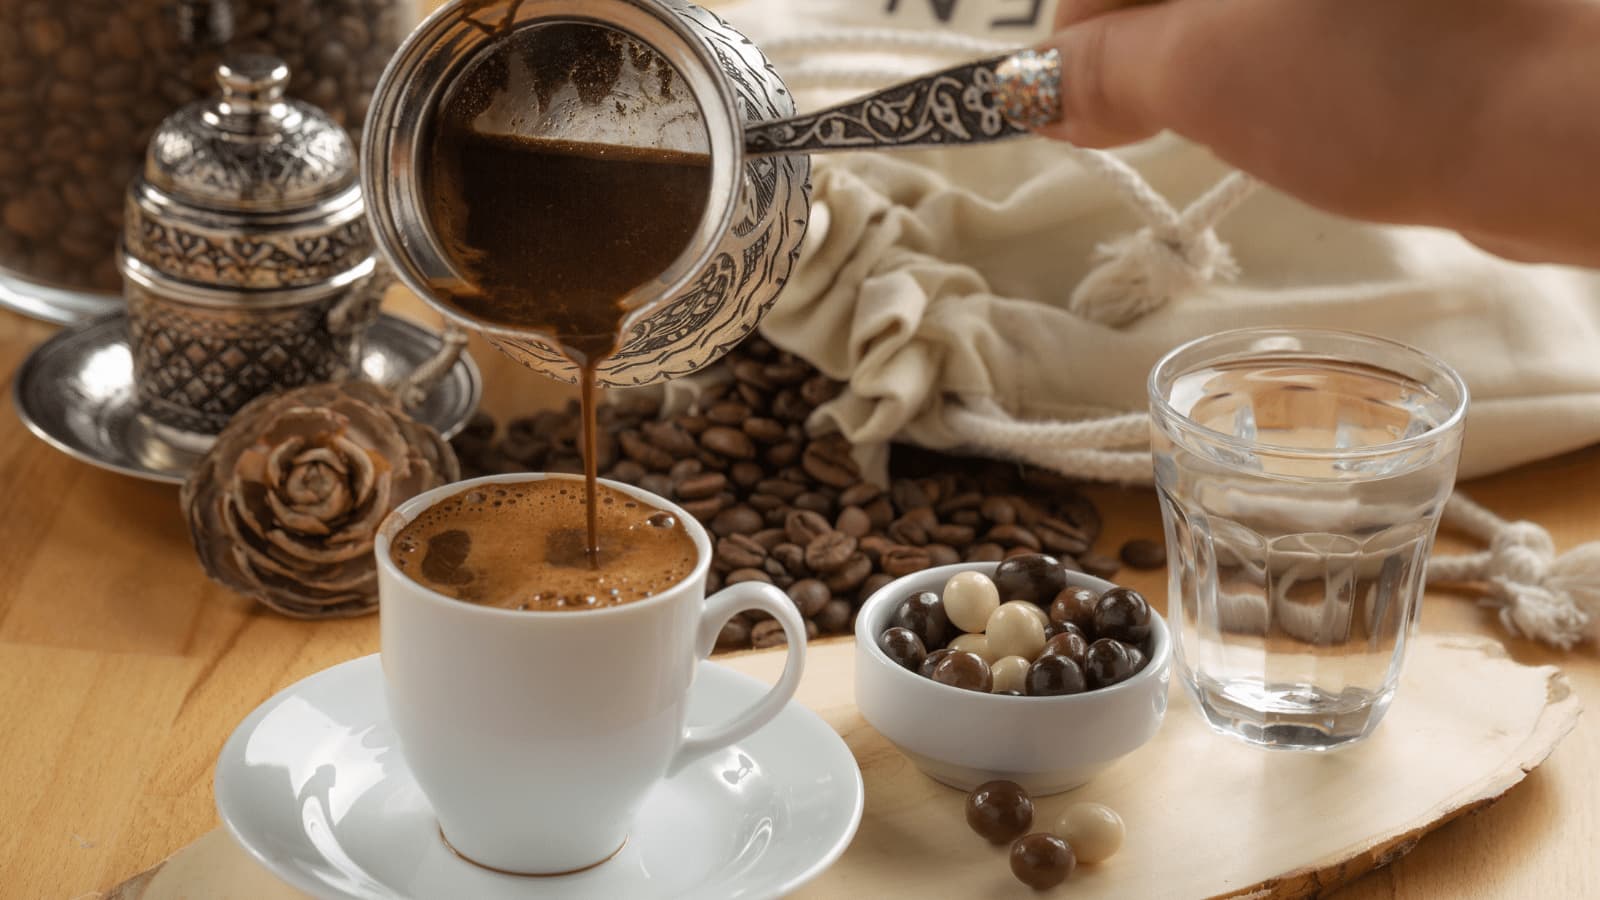 Türk Kahvesinin Faydaları